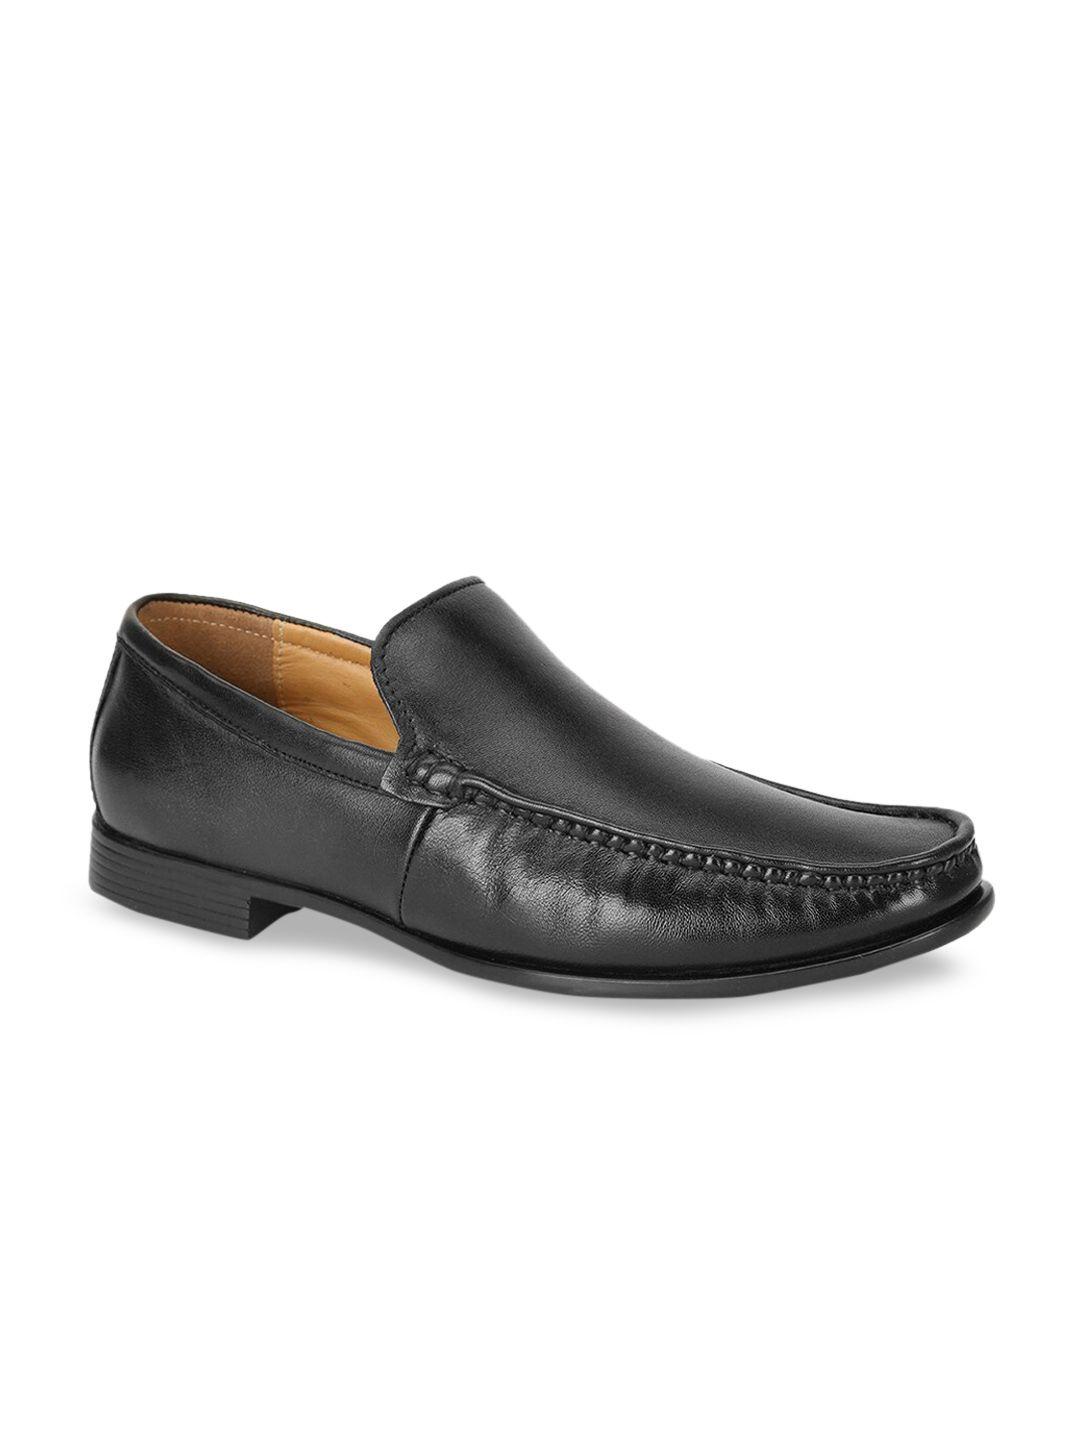 bata men black solid leather formal loafers